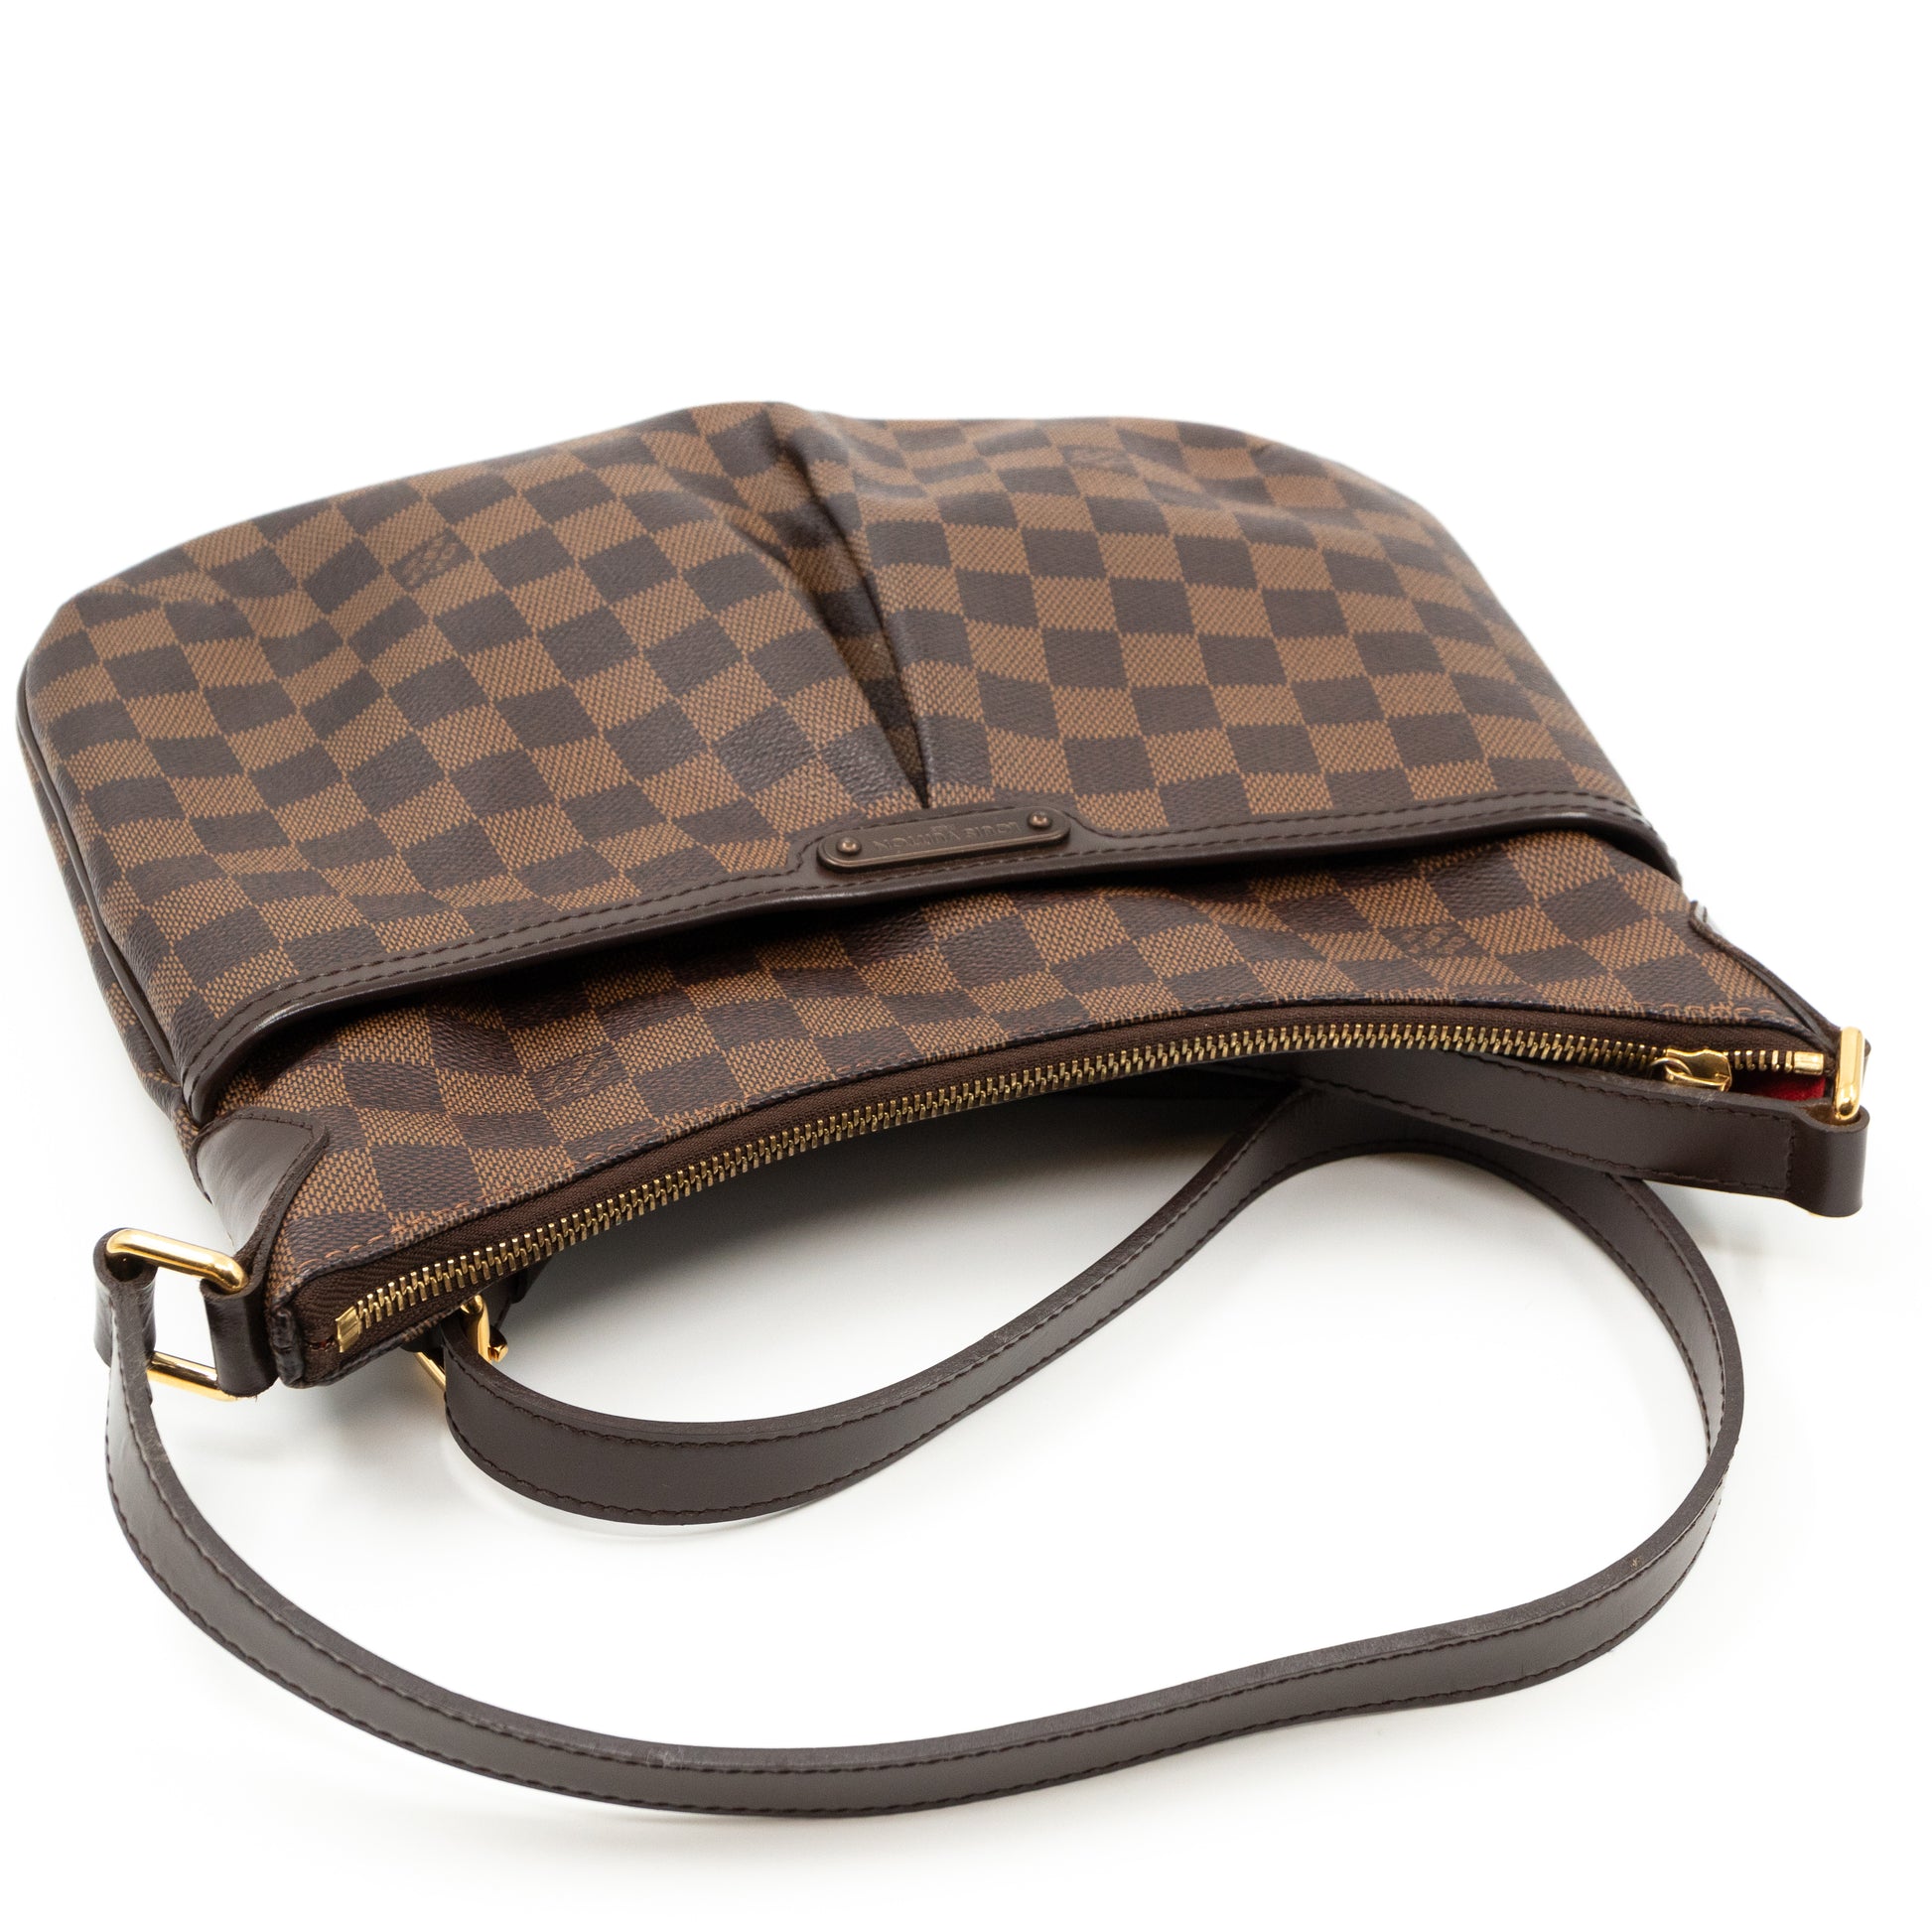 Authentic Louis Vuitton Bloomsbury PM crossbody shoulder bag. VGC